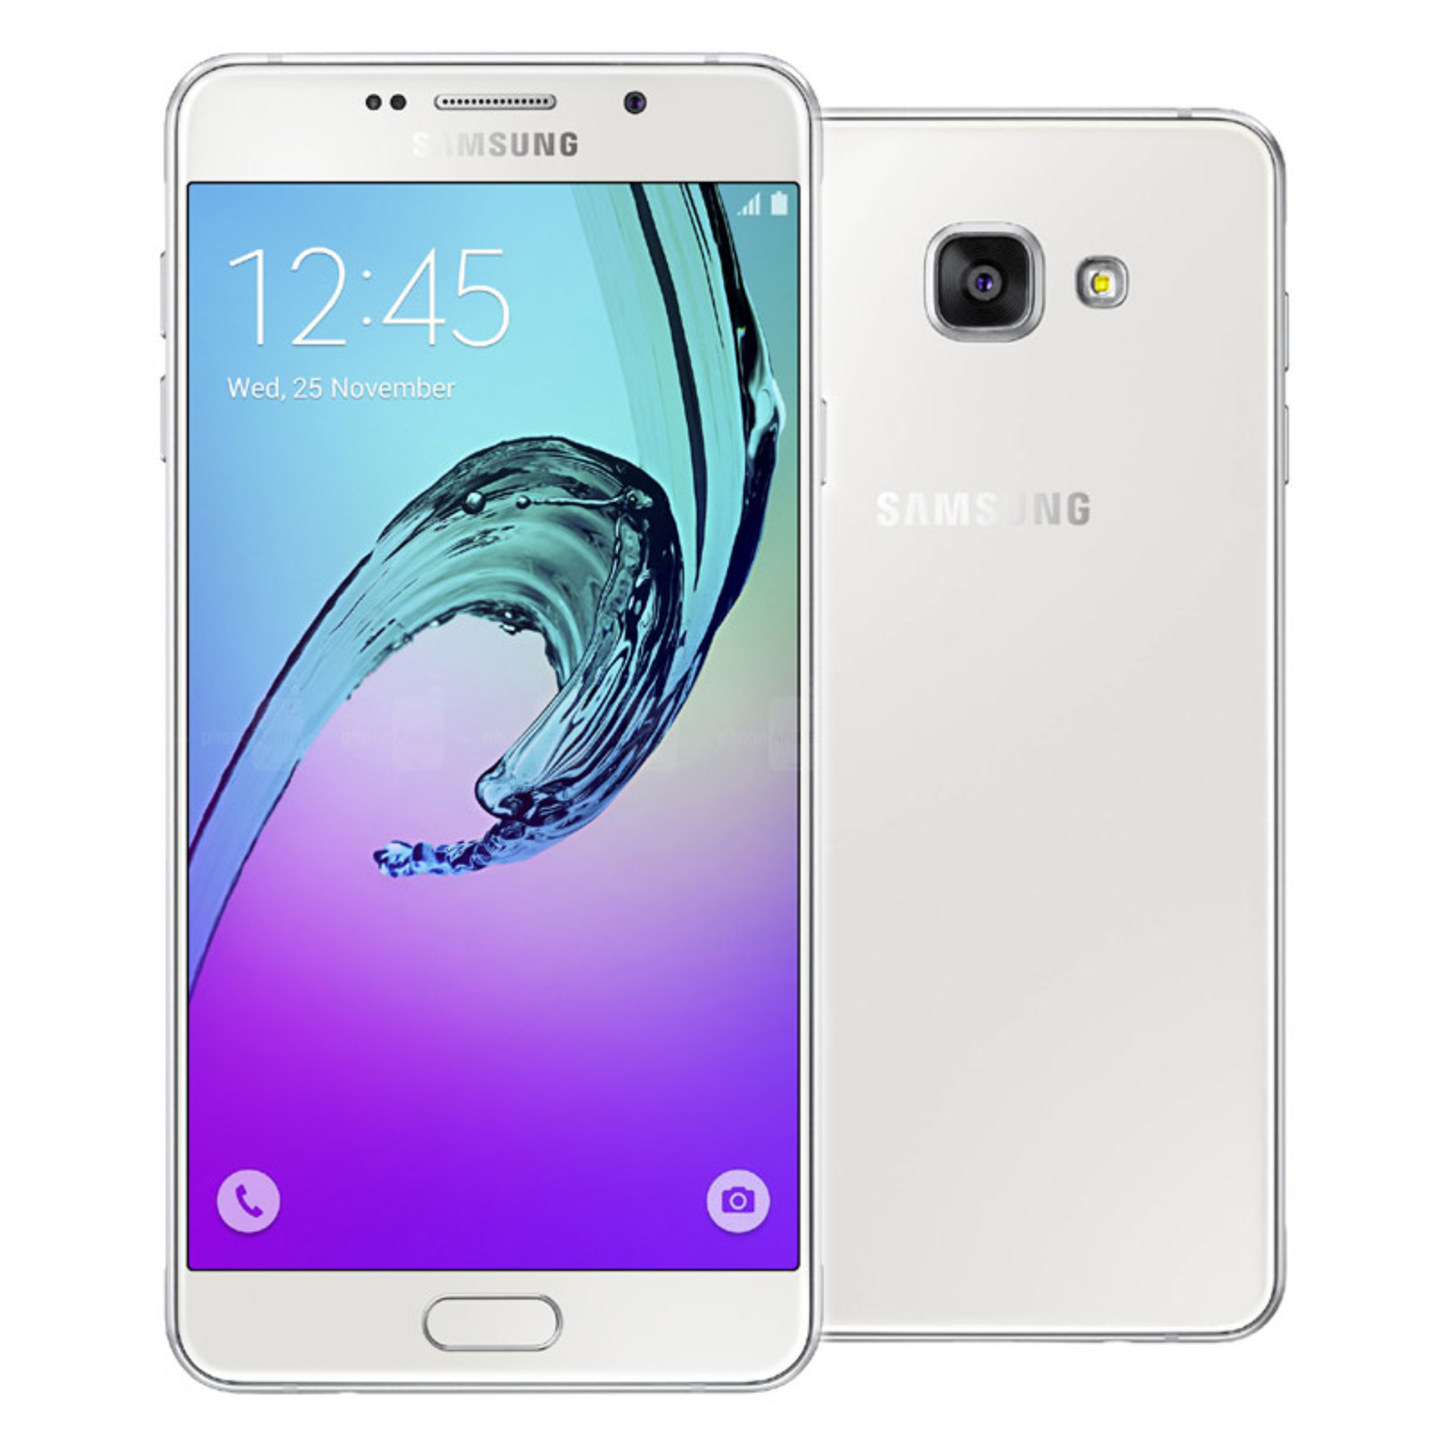 Samsung Galaxy A7 2016 3 GB 16 GB Refurbished